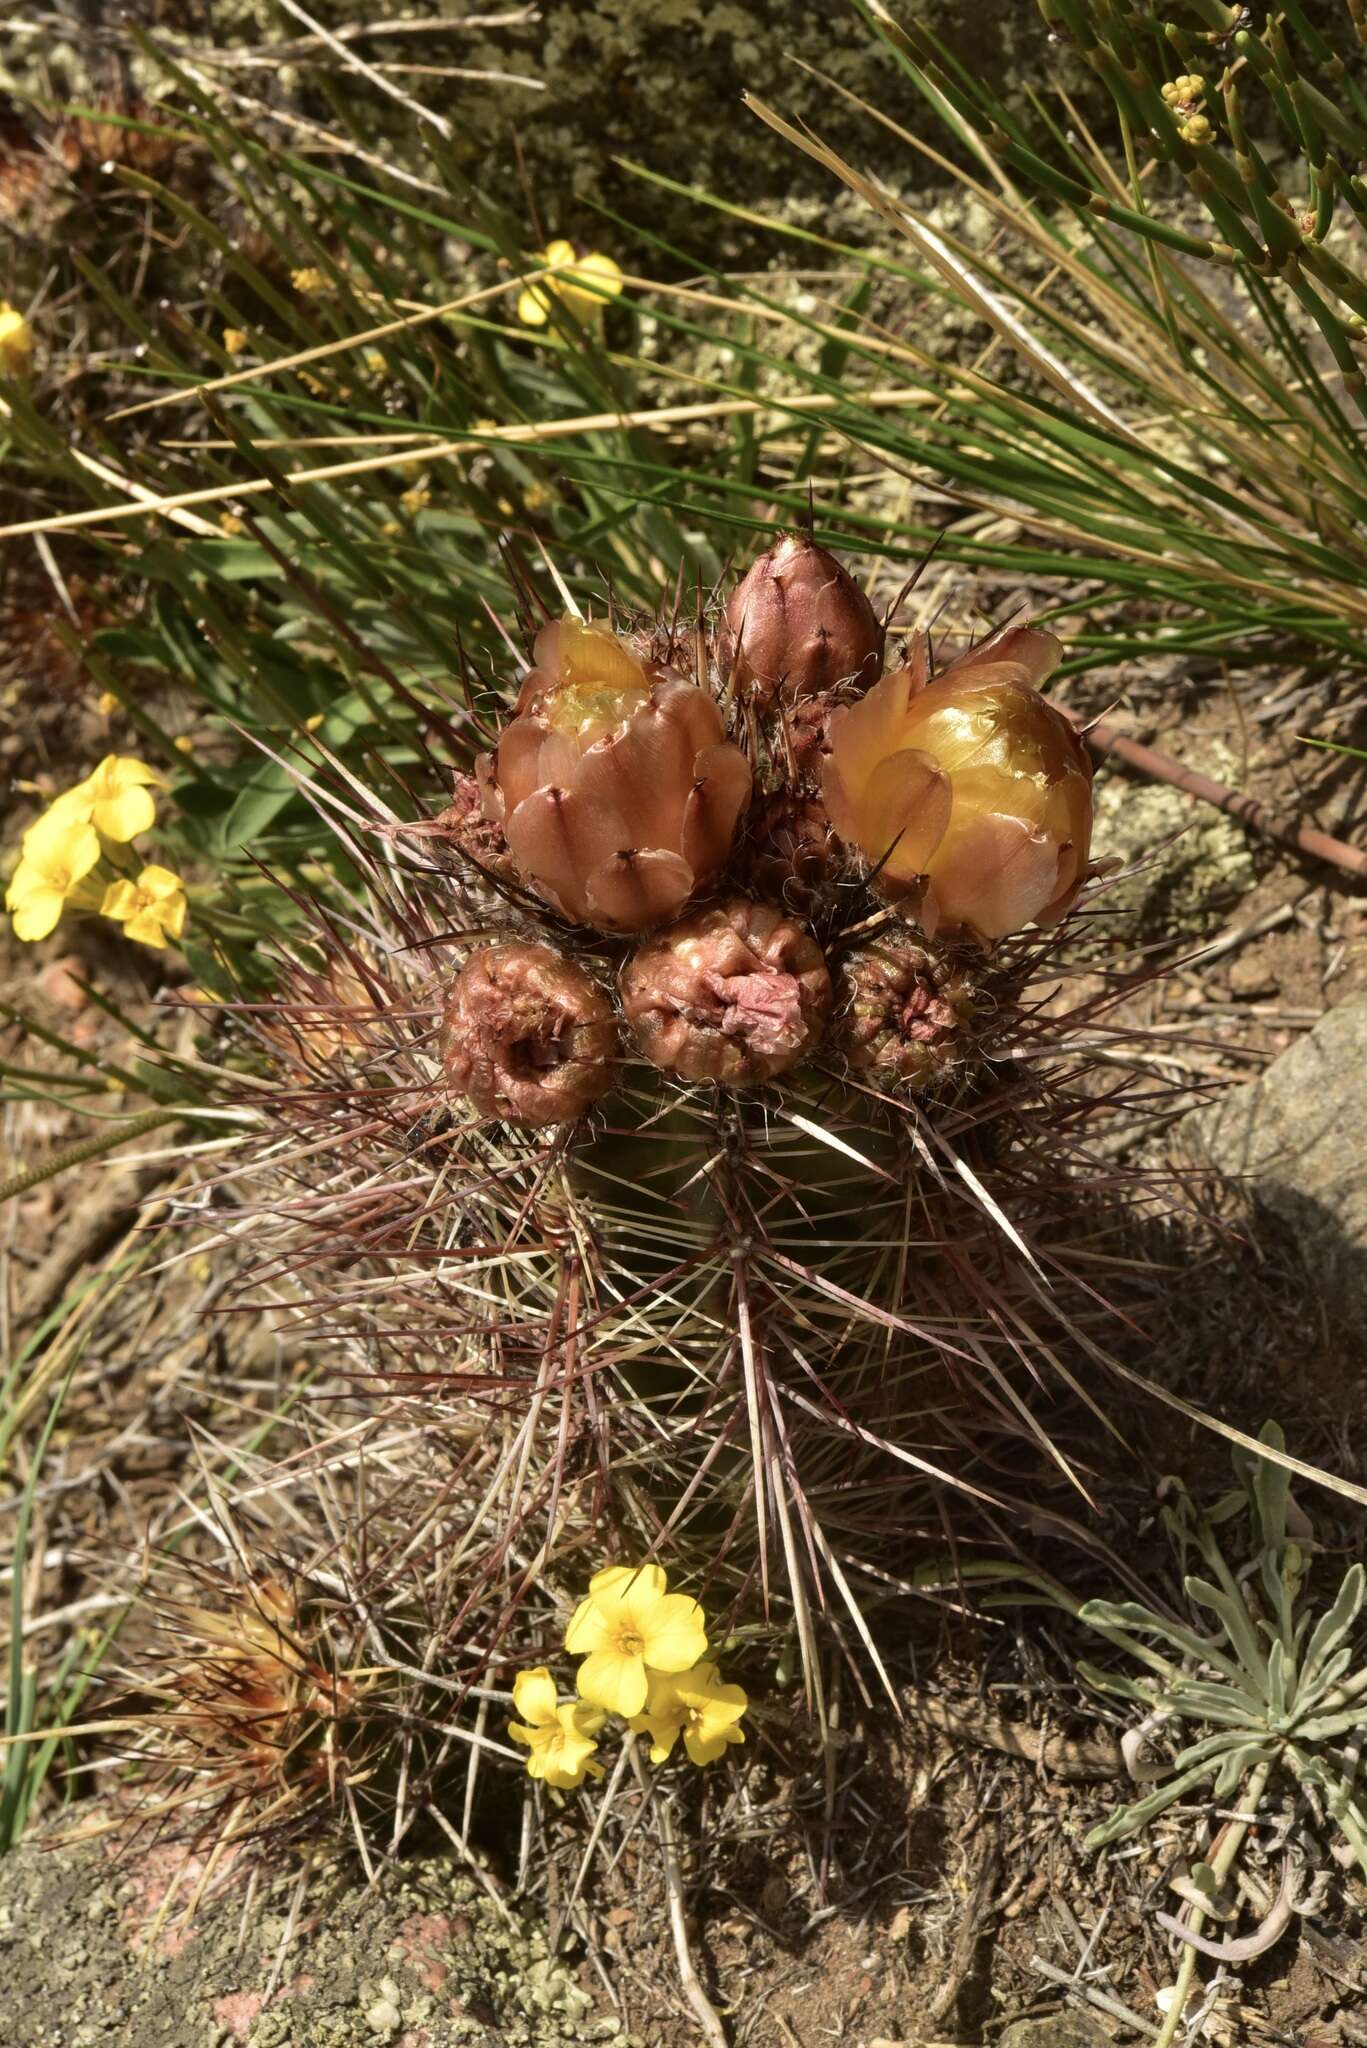 Image of Austrocactus philippii (Regel & Schmidt) Buxb.